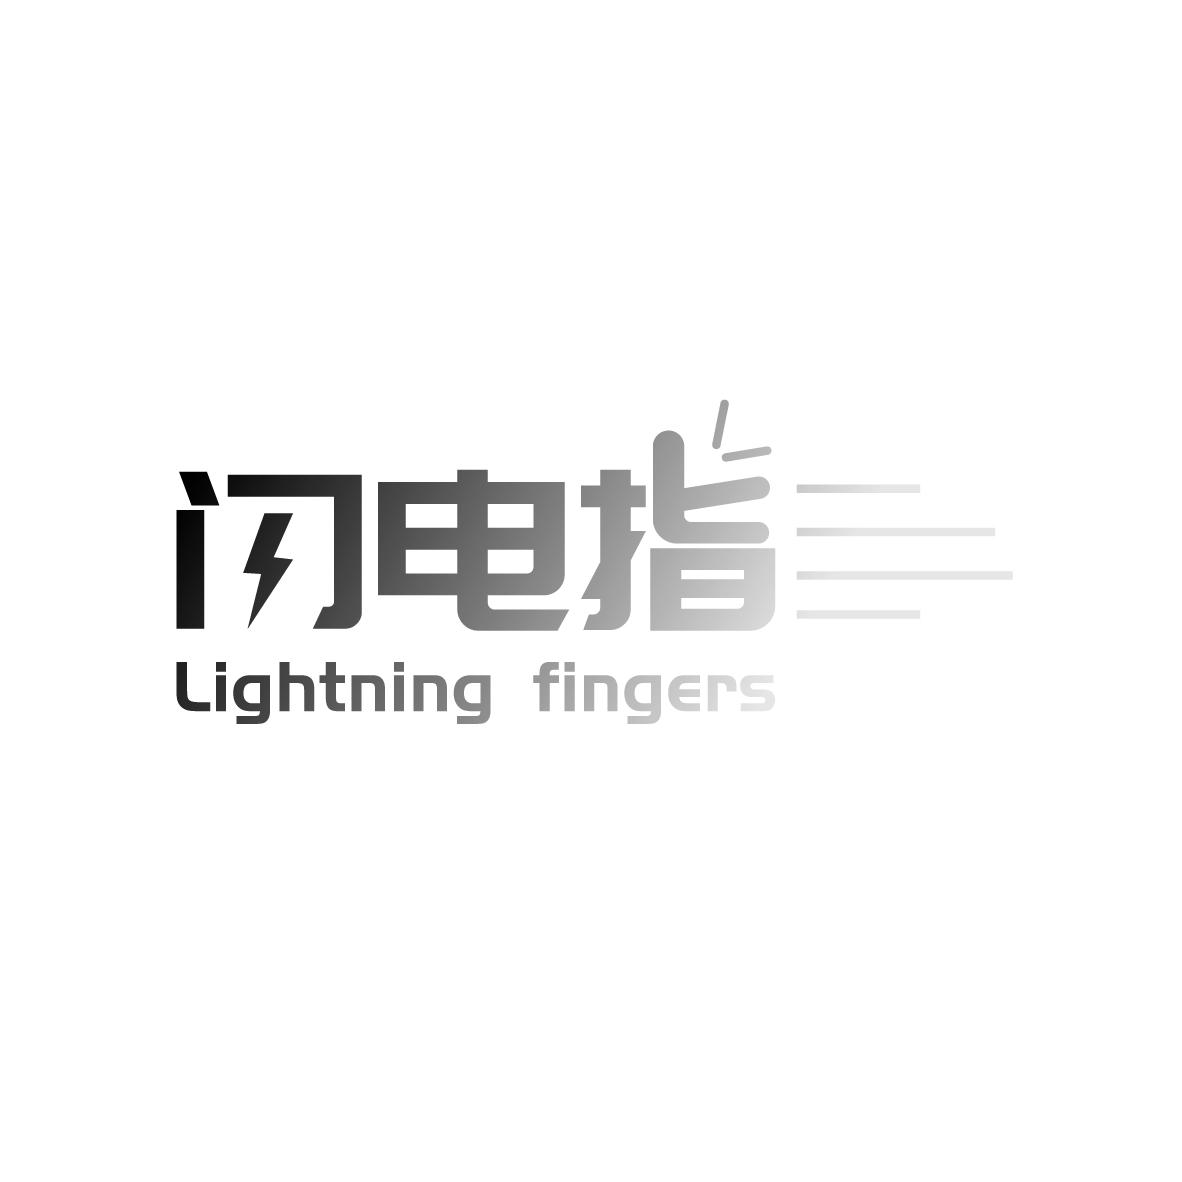 21类-厨具瓷器闪电指 LIGHTNING FINGERS商标转让